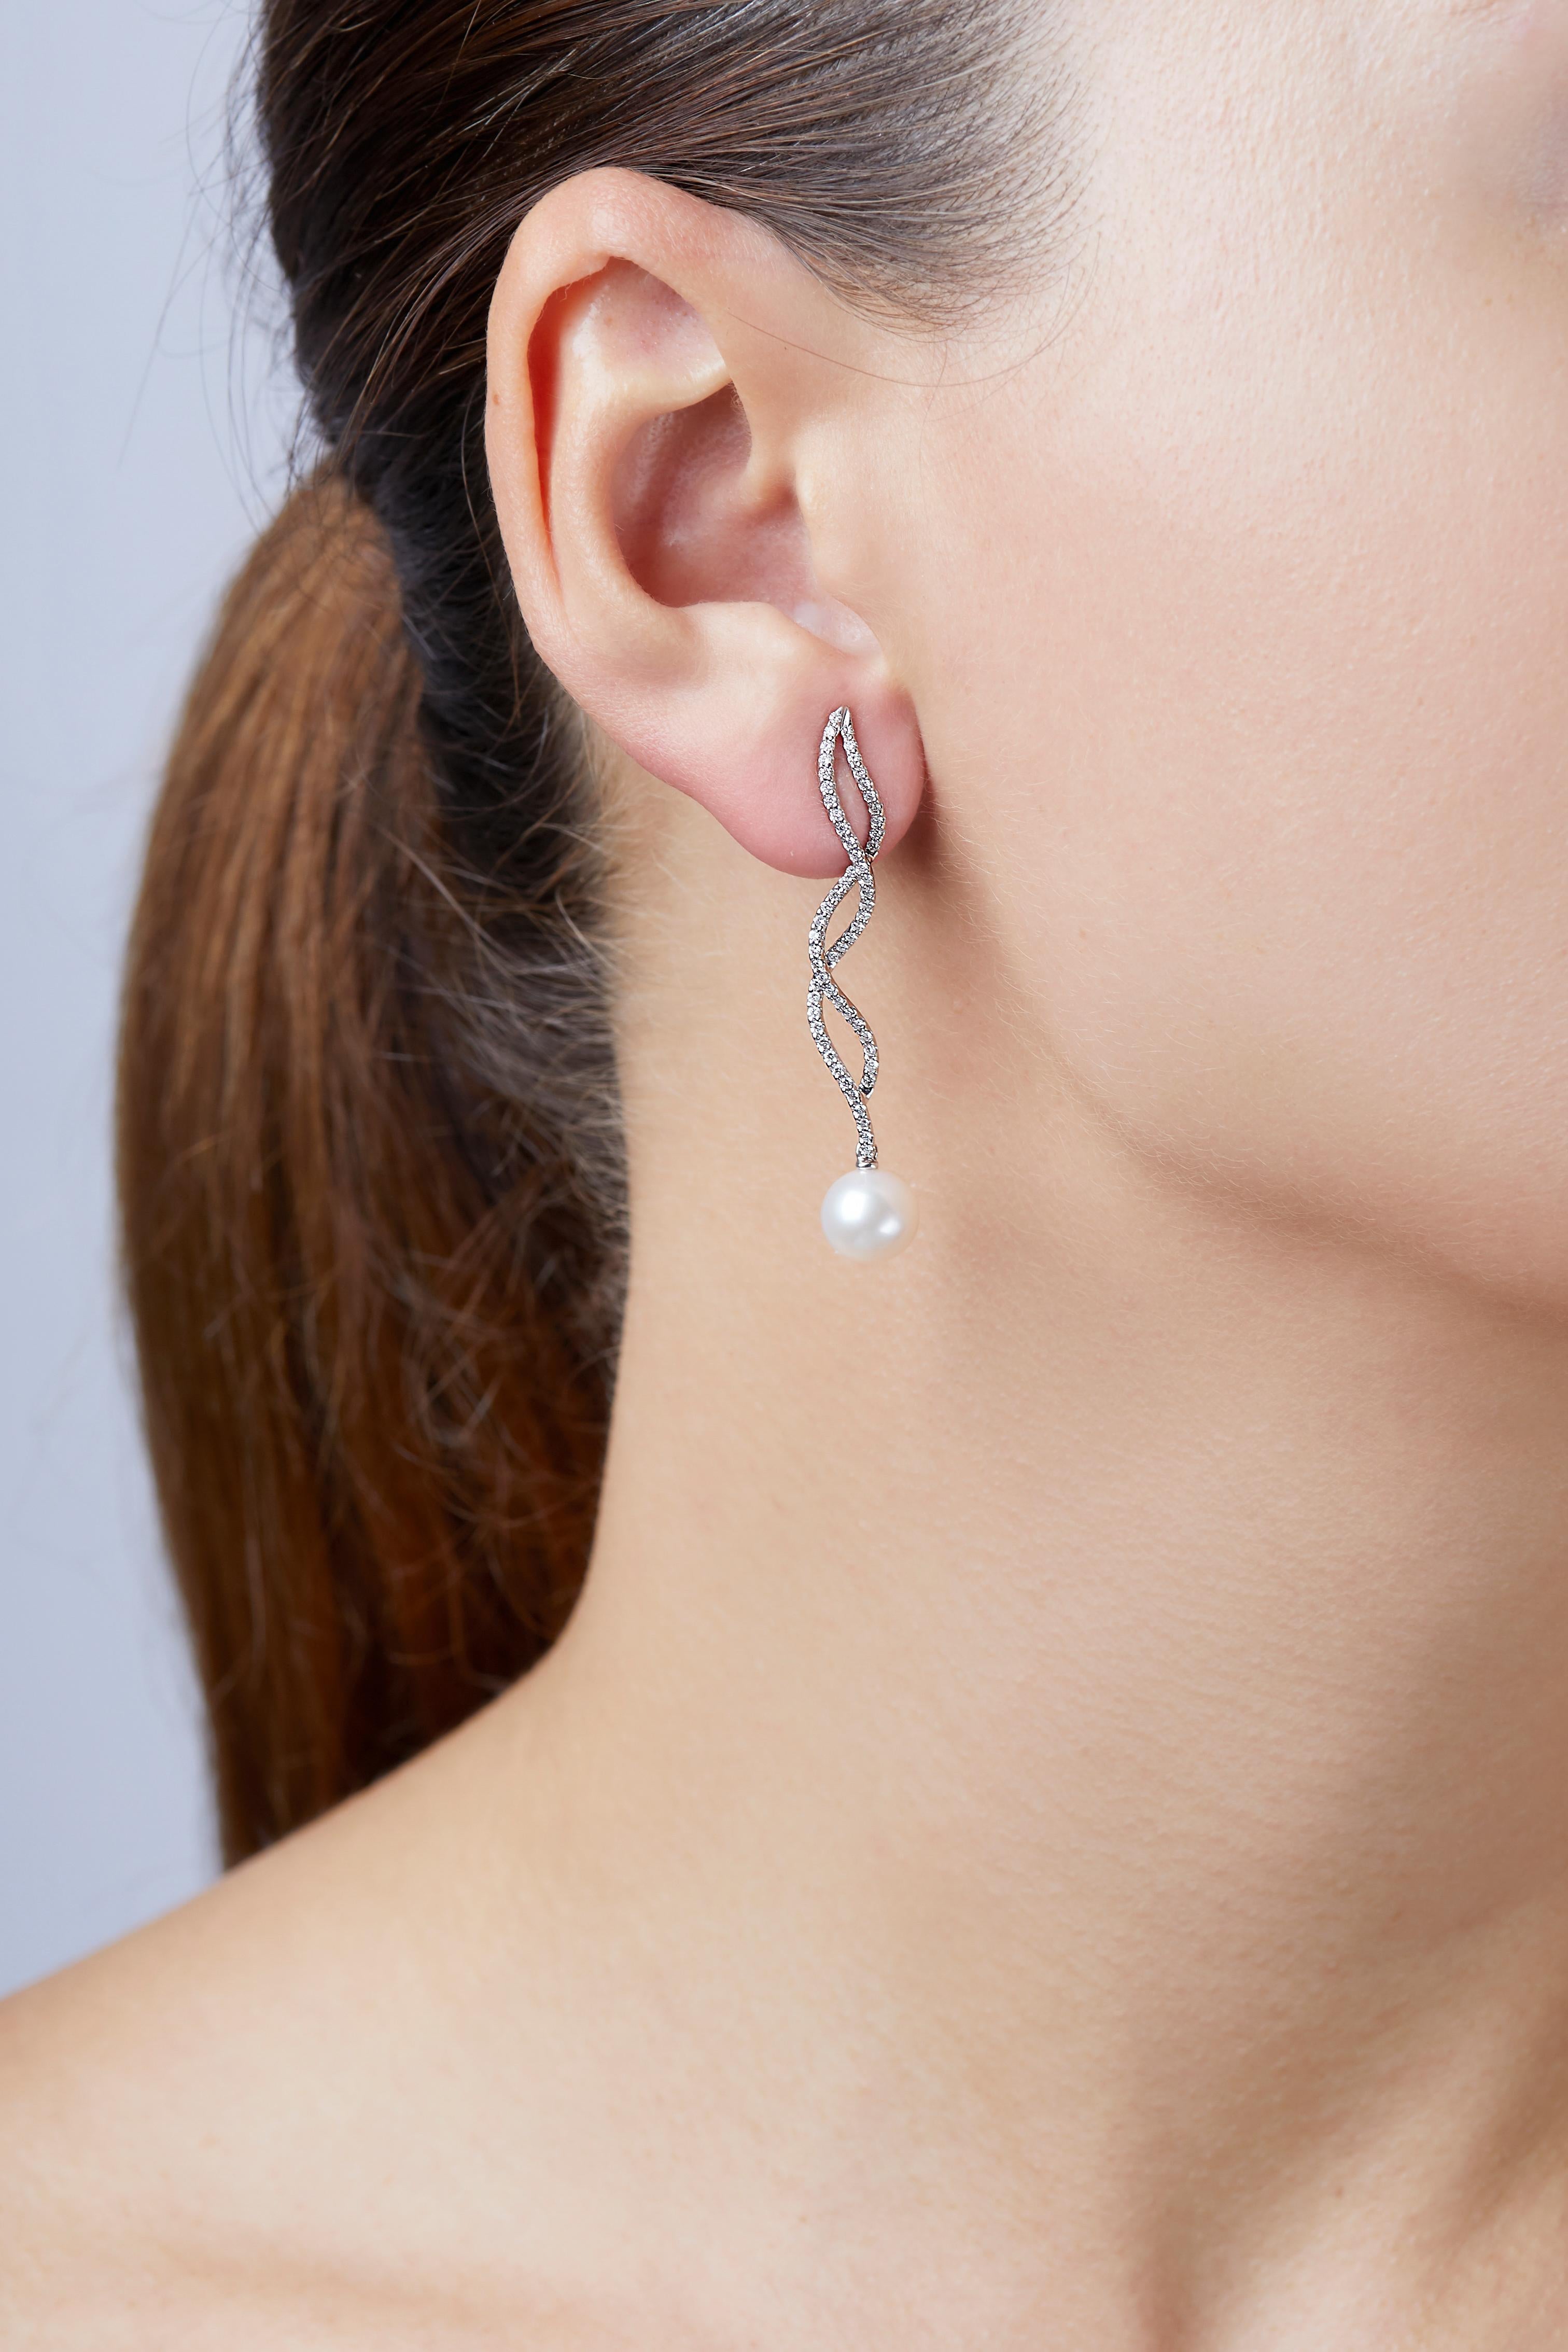 Diese einzigartigen Ohrringe von Yoko London bestehen aus glänzenden Süßwasserperlen, die von Diamanten umspielt werden. Diese eleganten Ohrringe aus 18 Karat Weißgold, die das Funkeln der Diamanten und den Glanz der Perlen betonen, sind das